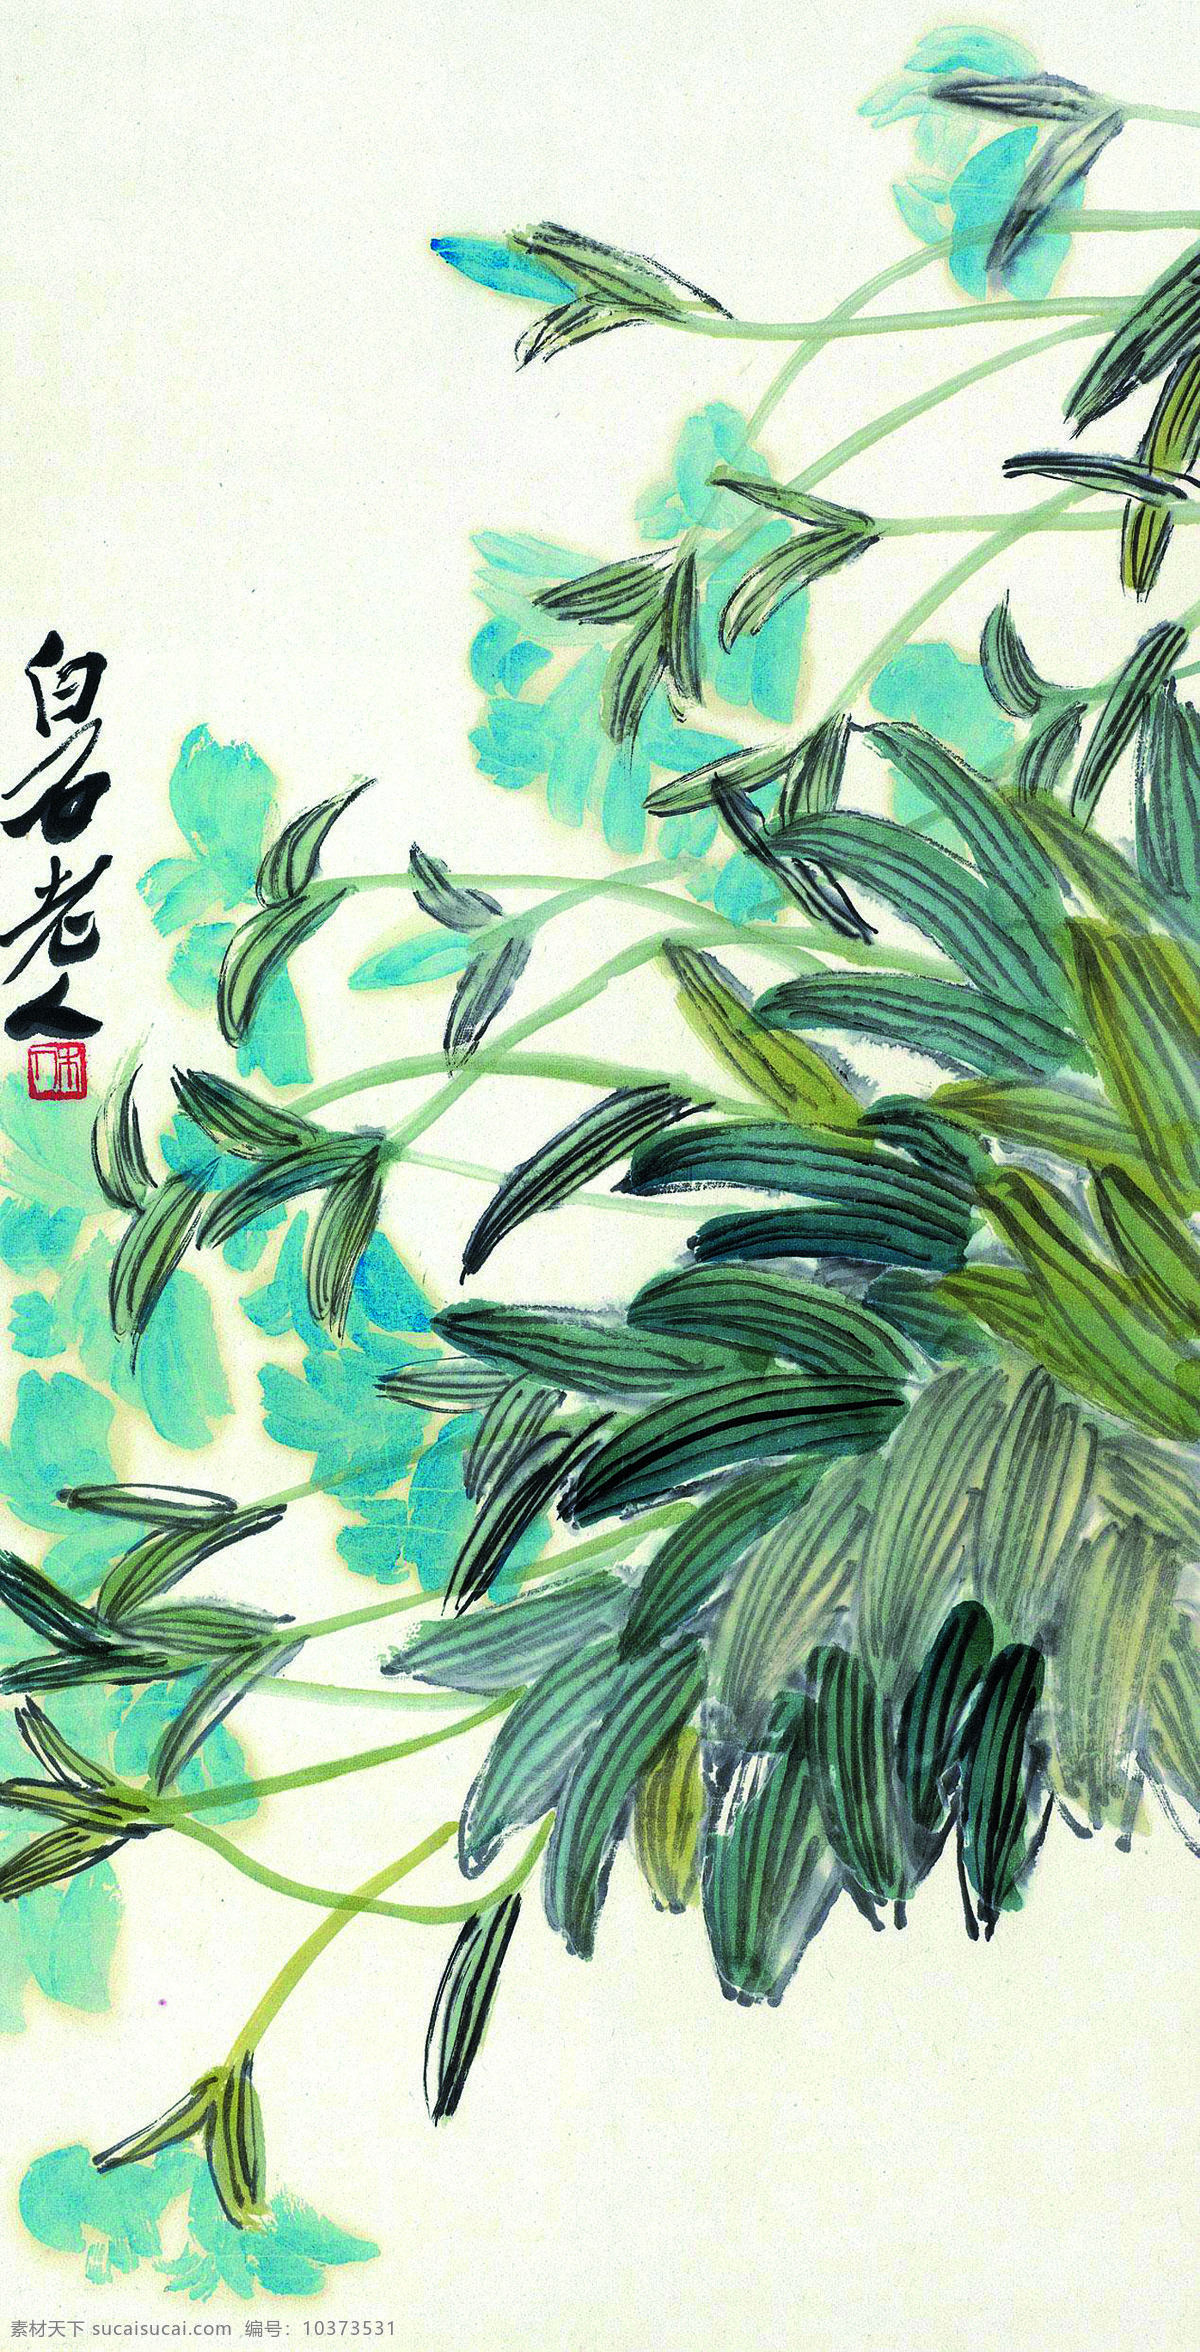 齐白石国画 美术 中国画 花卉 花草 花朵 名家国画 国画艺术 绘画书法 文化艺术